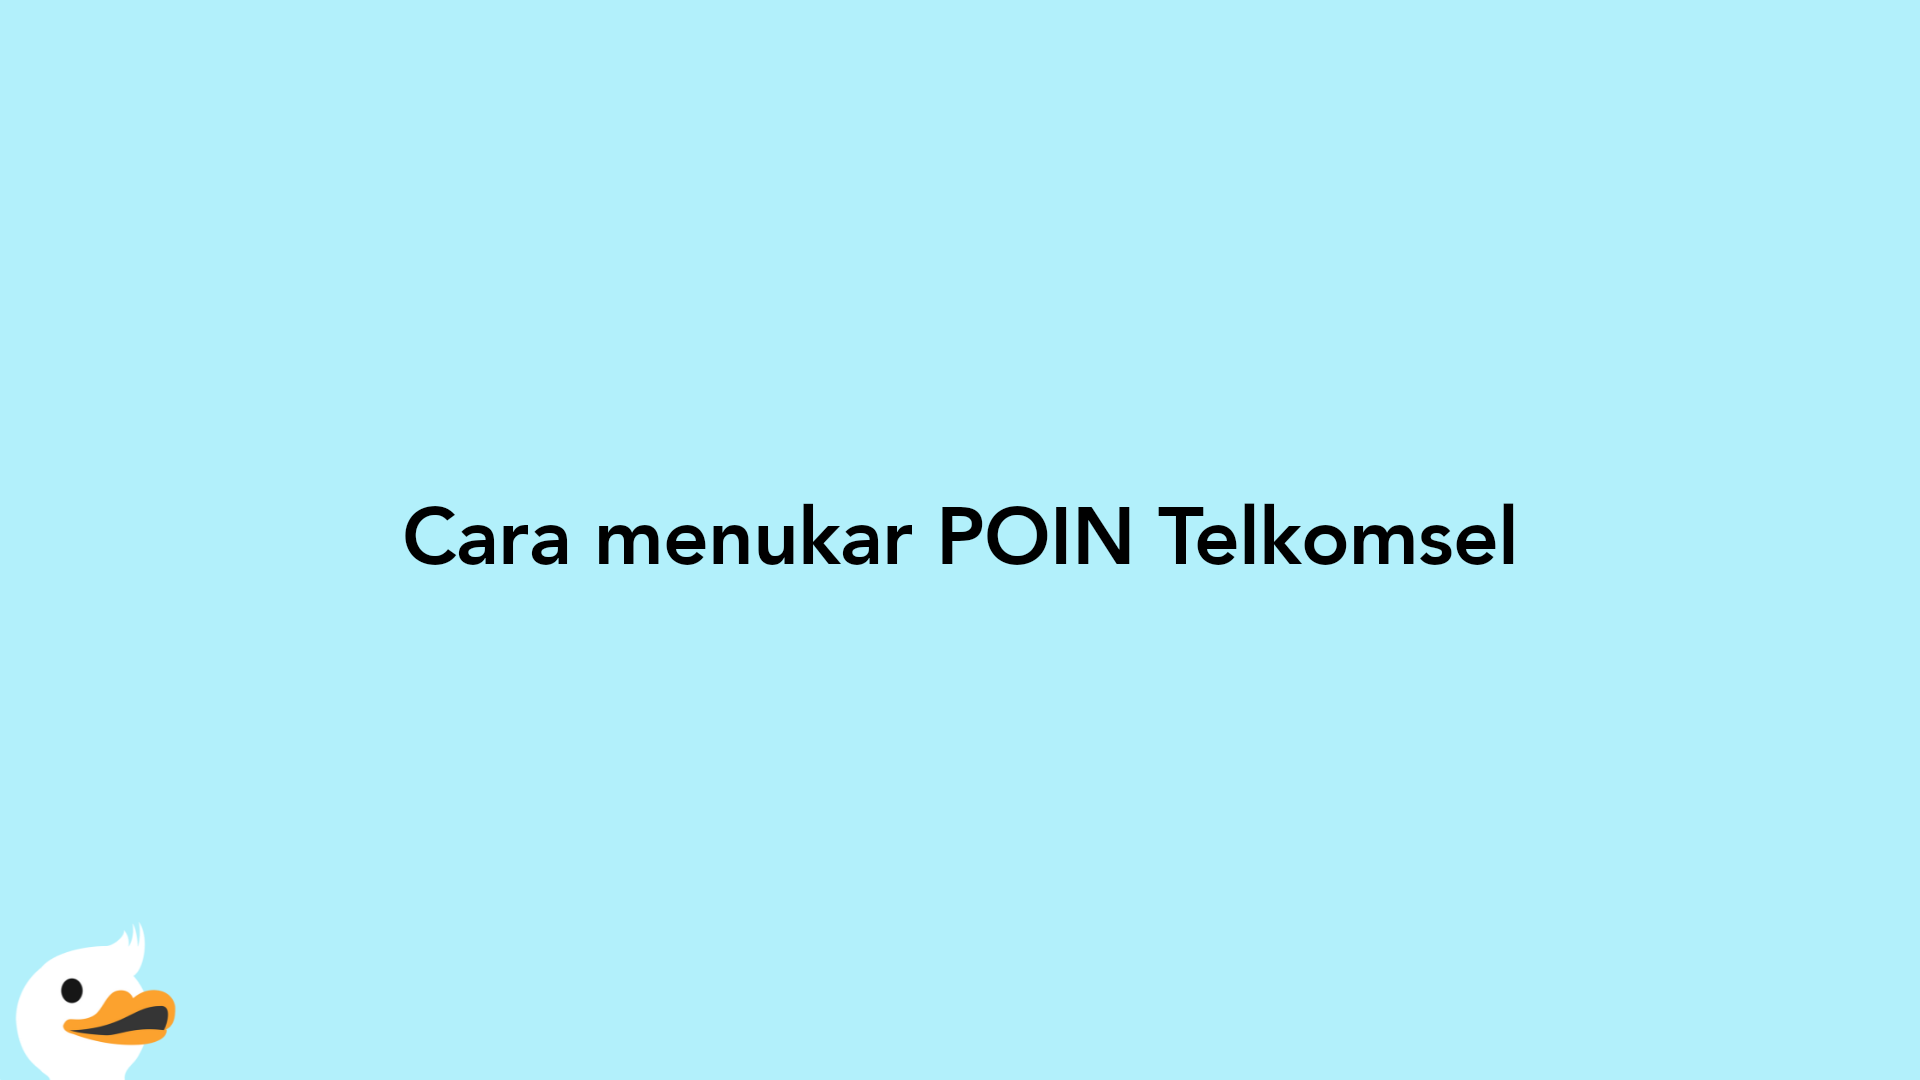 Cara menukar POIN Telkomsel